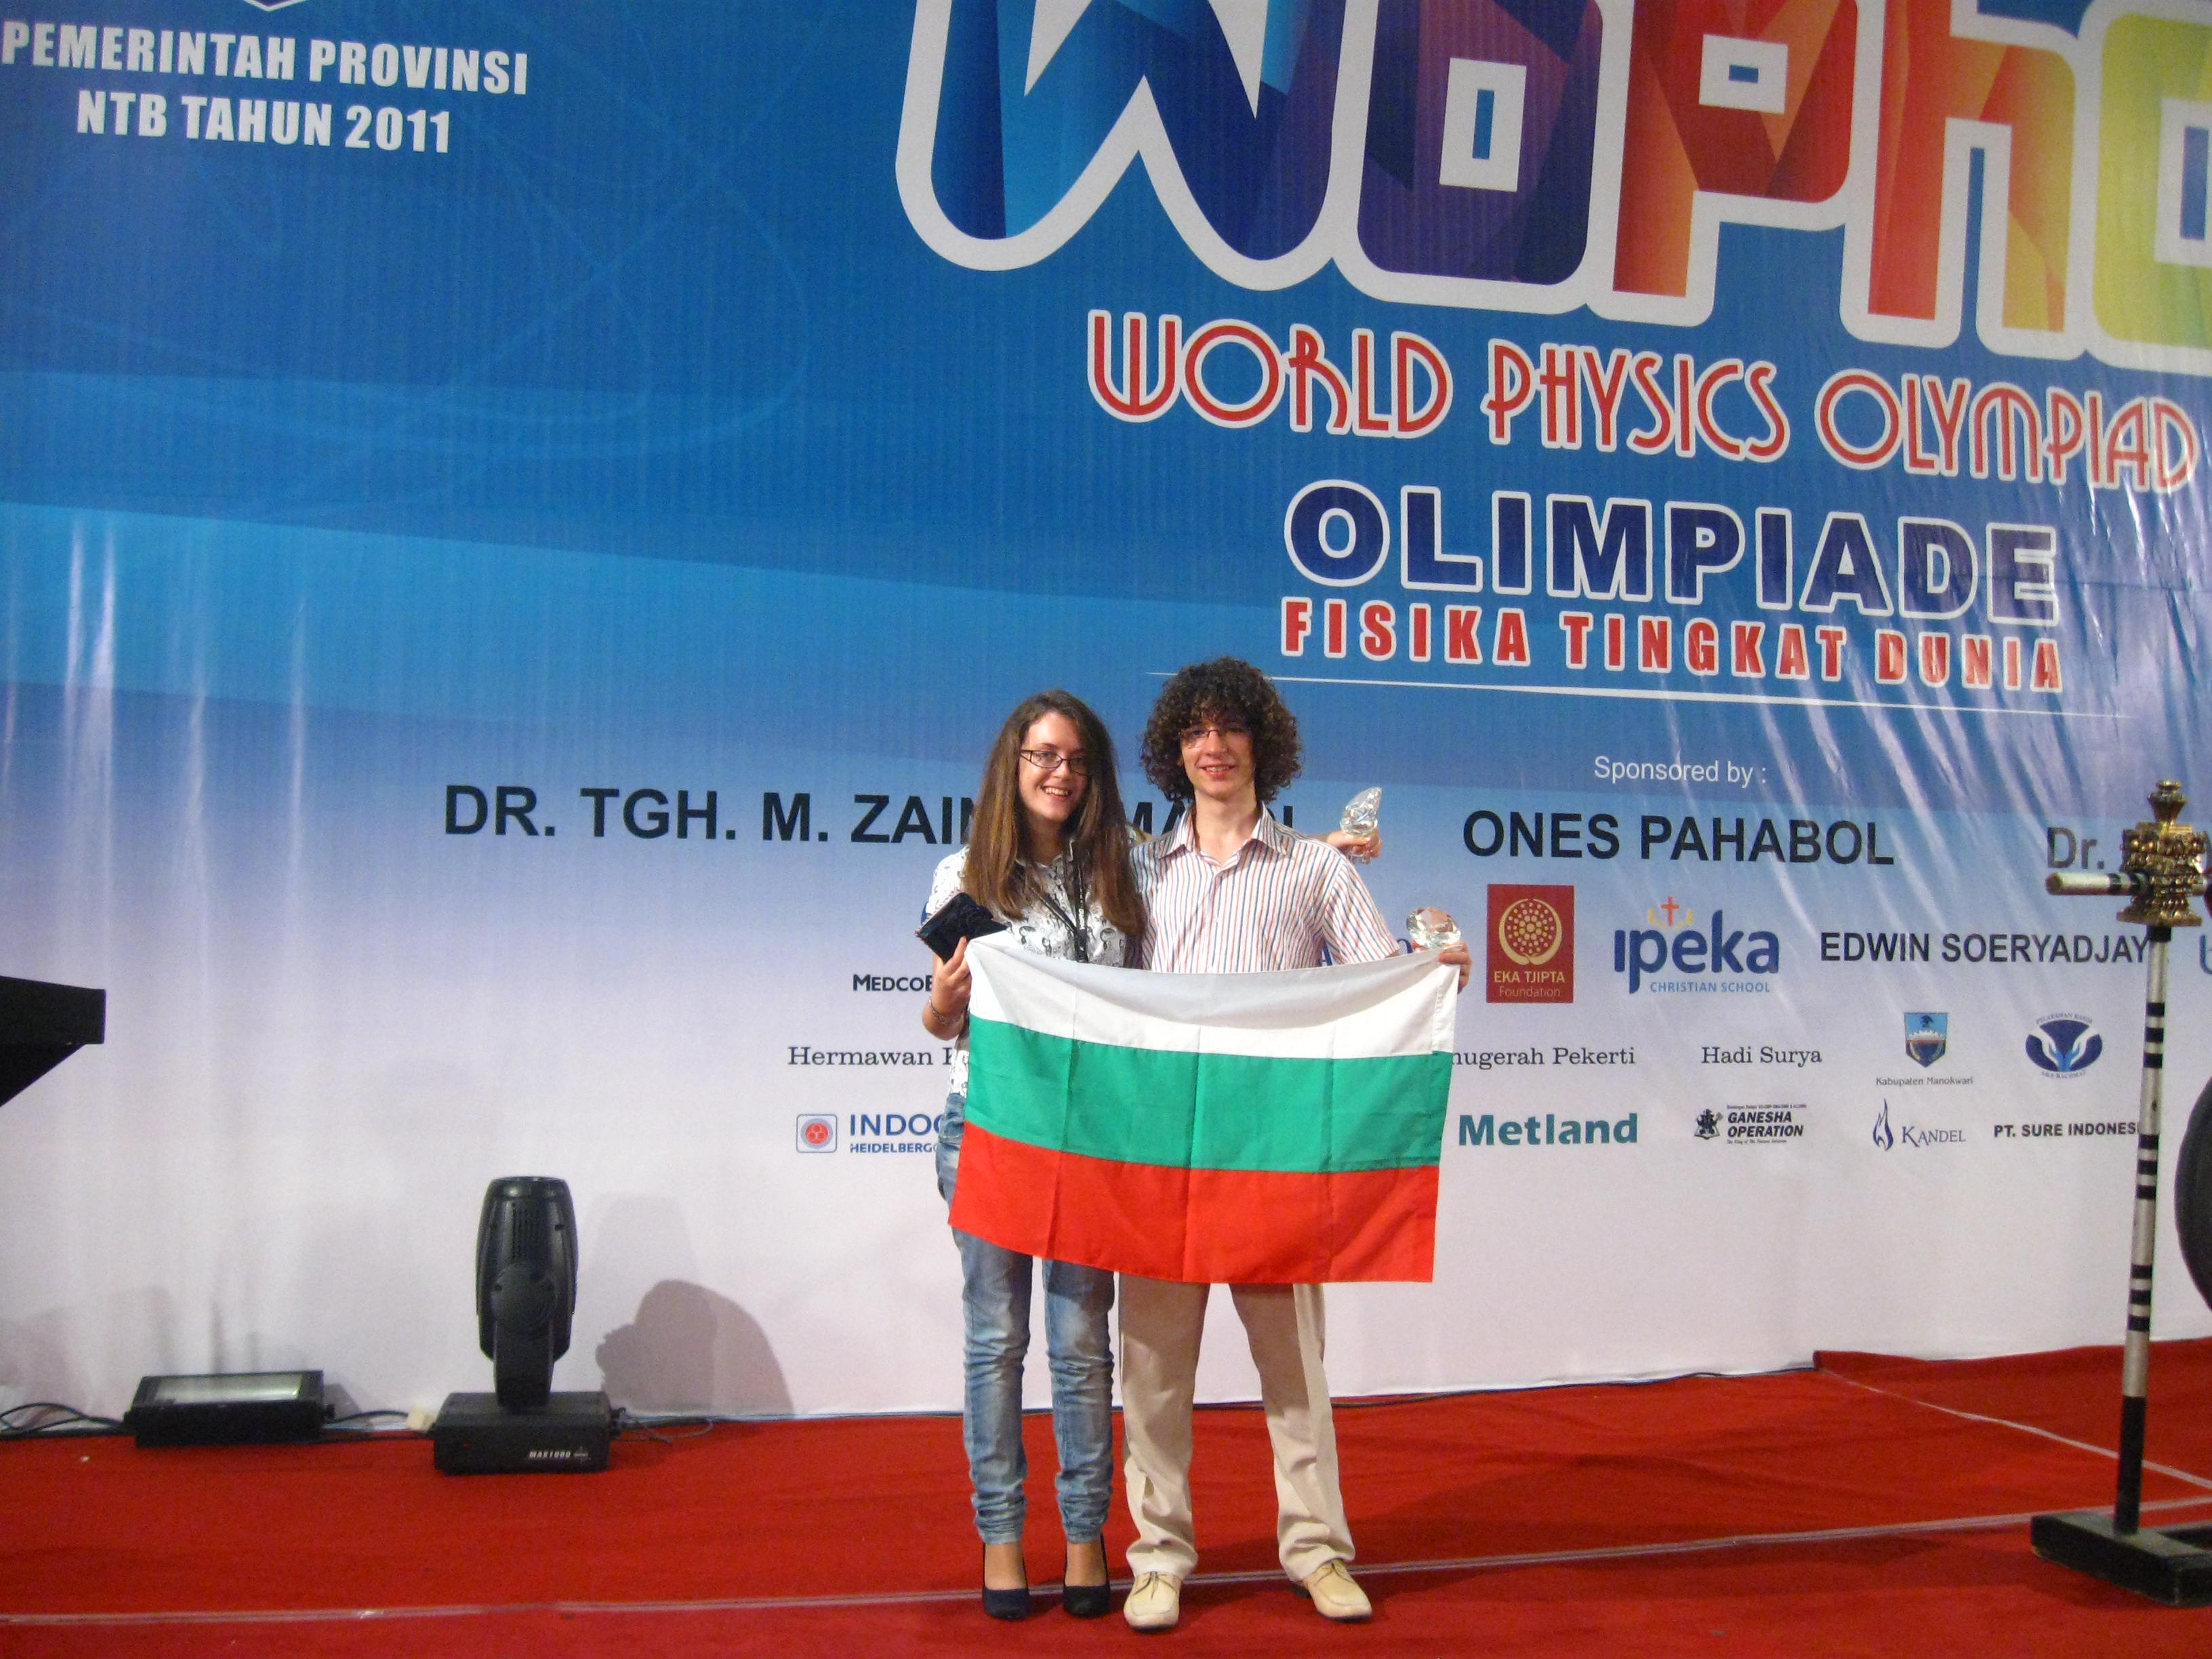 Българчета донесоха сребърни медали по физика от олимпиада